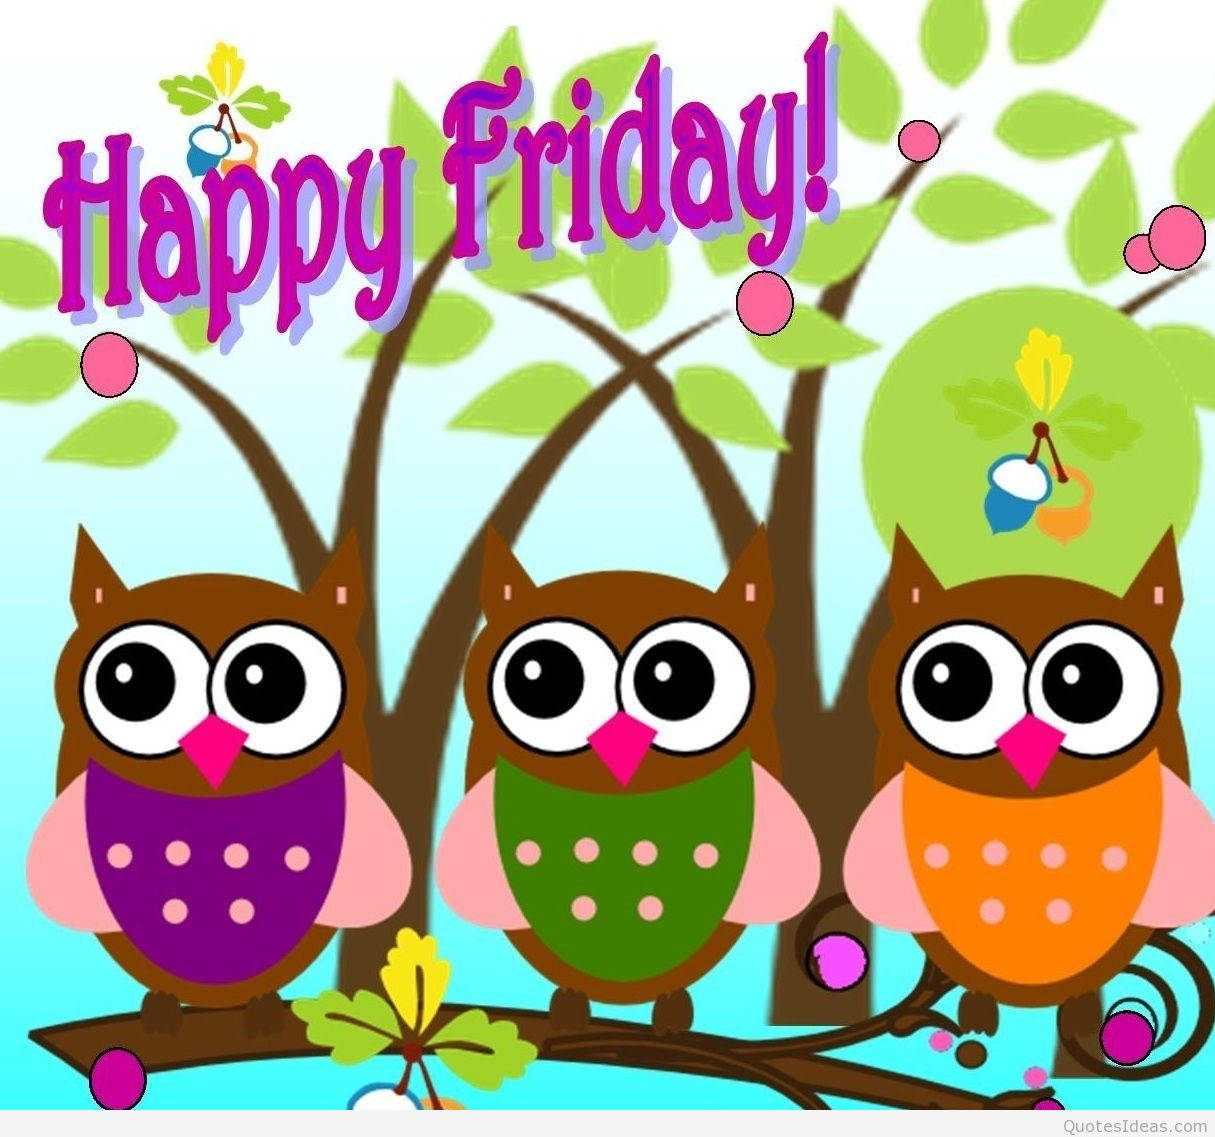 Happy Friday Owls